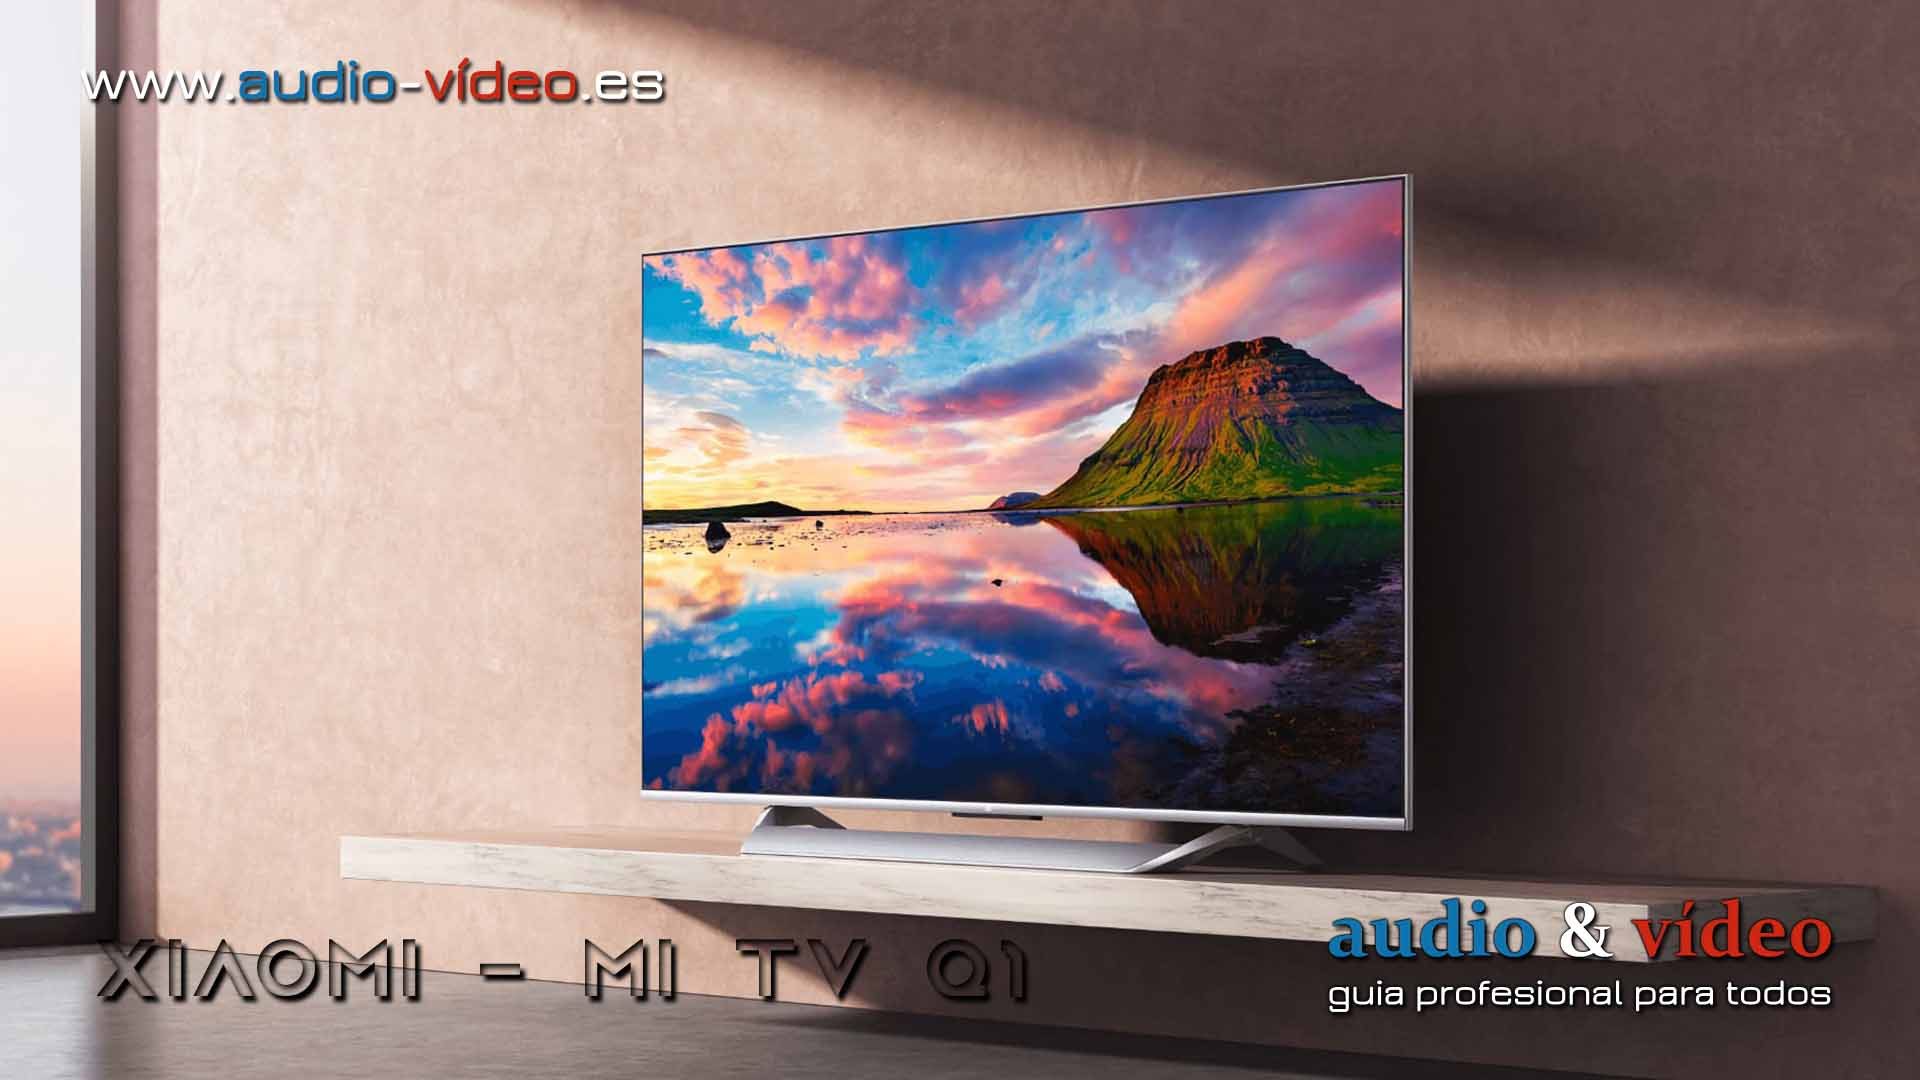 Xiaomi Mi TV Q1 – televisor LCD 4K de 75″ con FALD